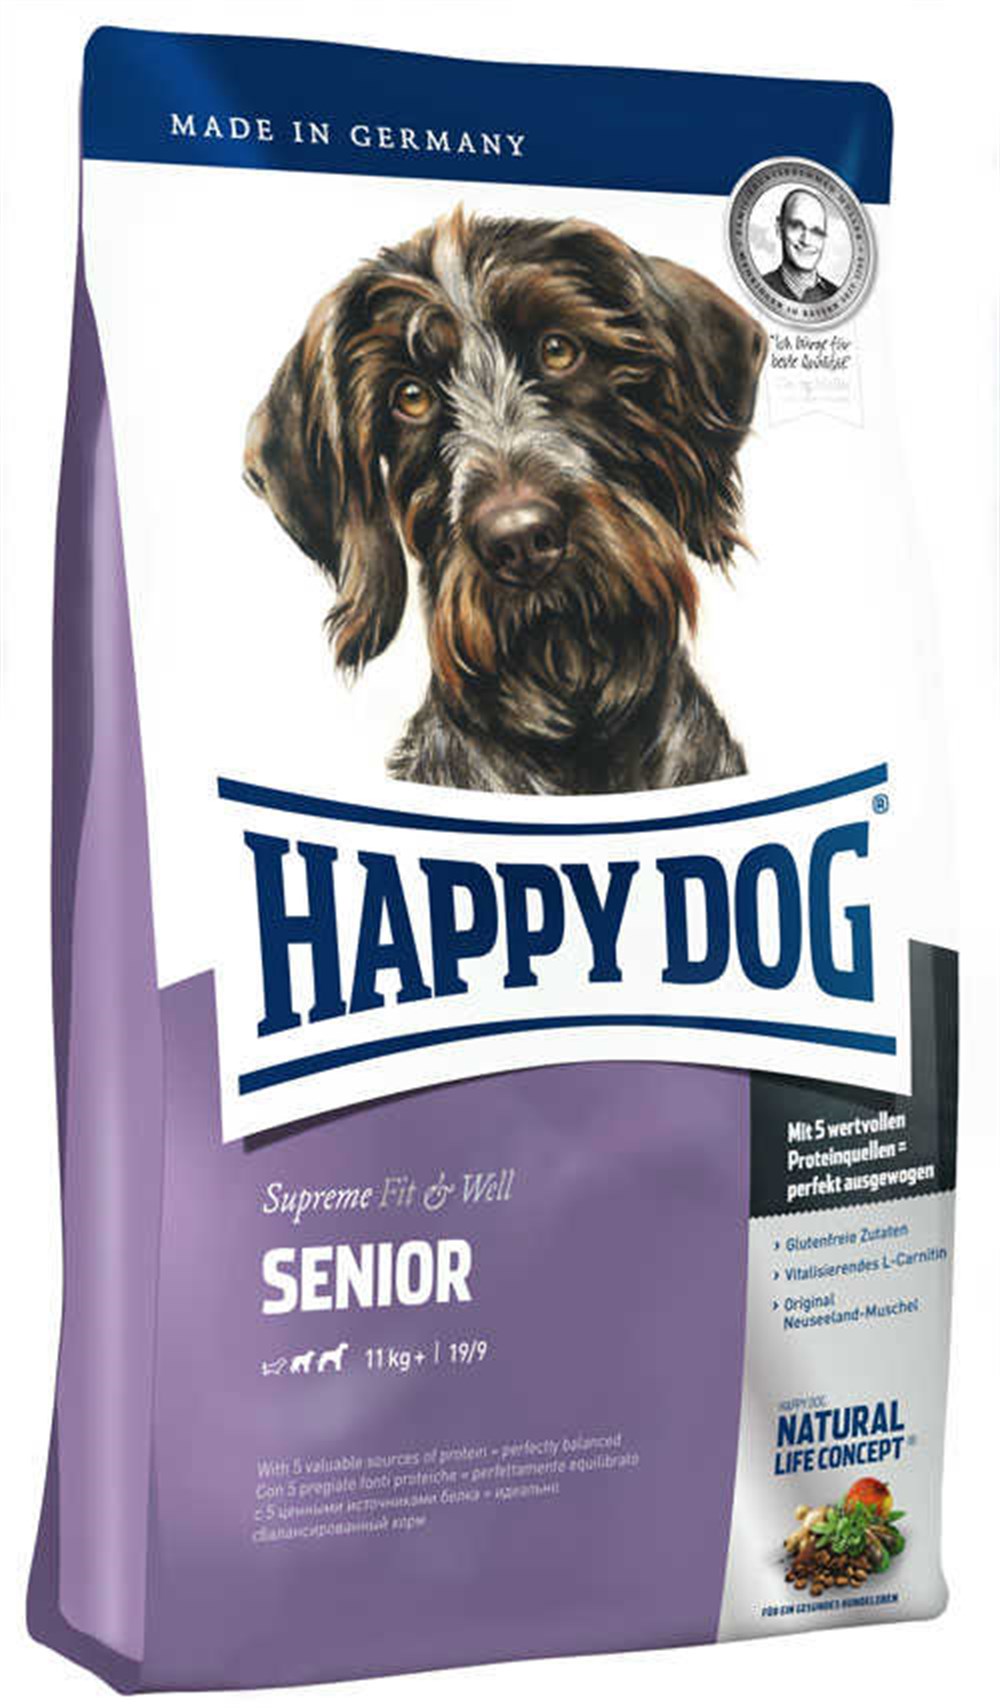 Happy Dog Senior Yaşlı Köpek Maması 4Kg - Evcilbesinleri.com